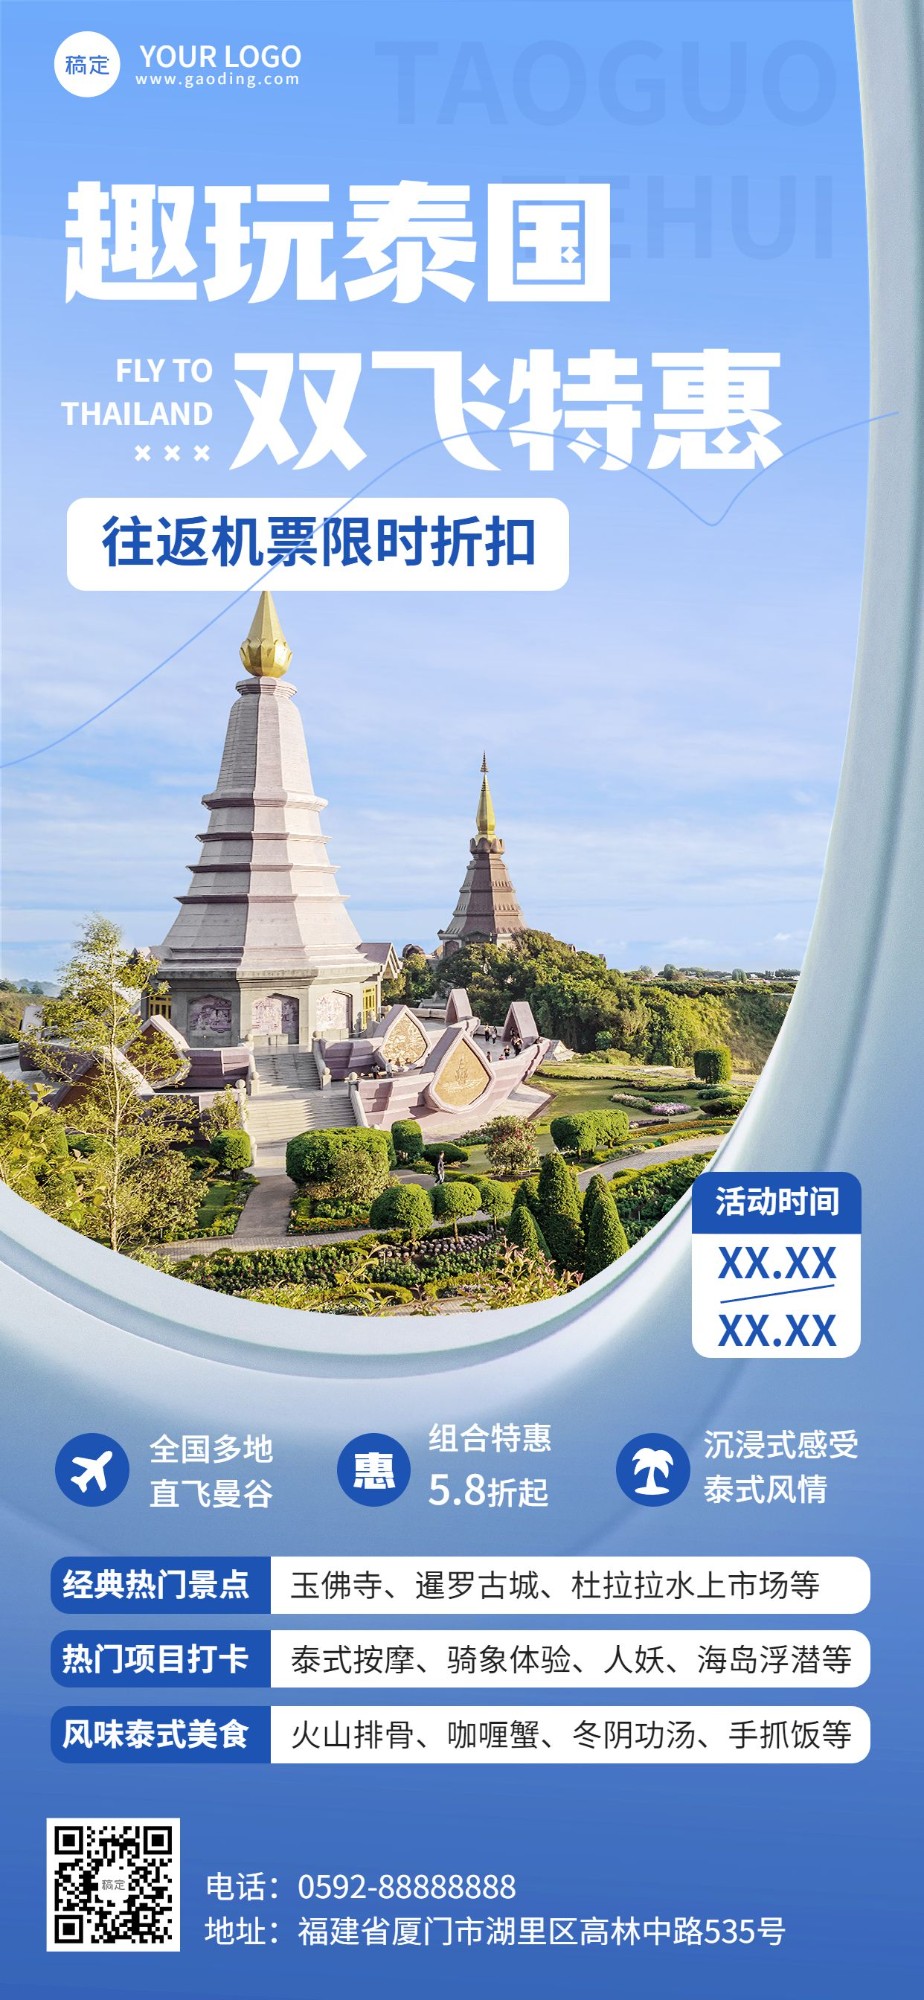 旅游出行泰国旅游机票促销飞机舷窗元素设计全屏竖版海报预览效果